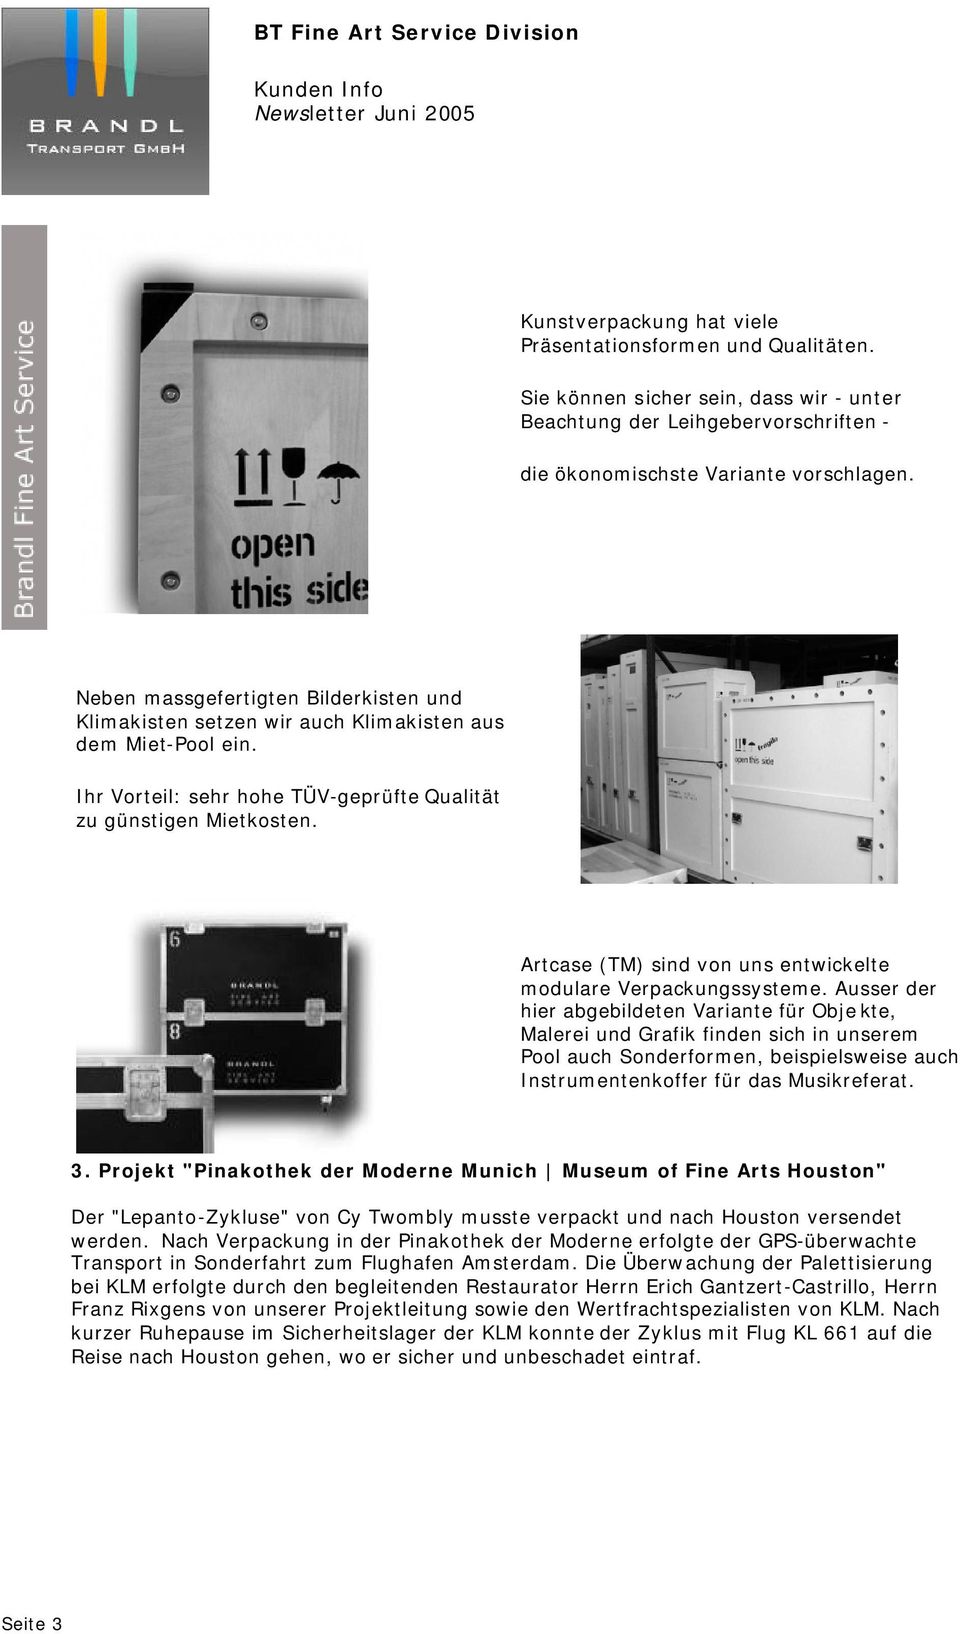 Artcase (TM) sind von uns entwickelte modulare Verpackungssysteme.